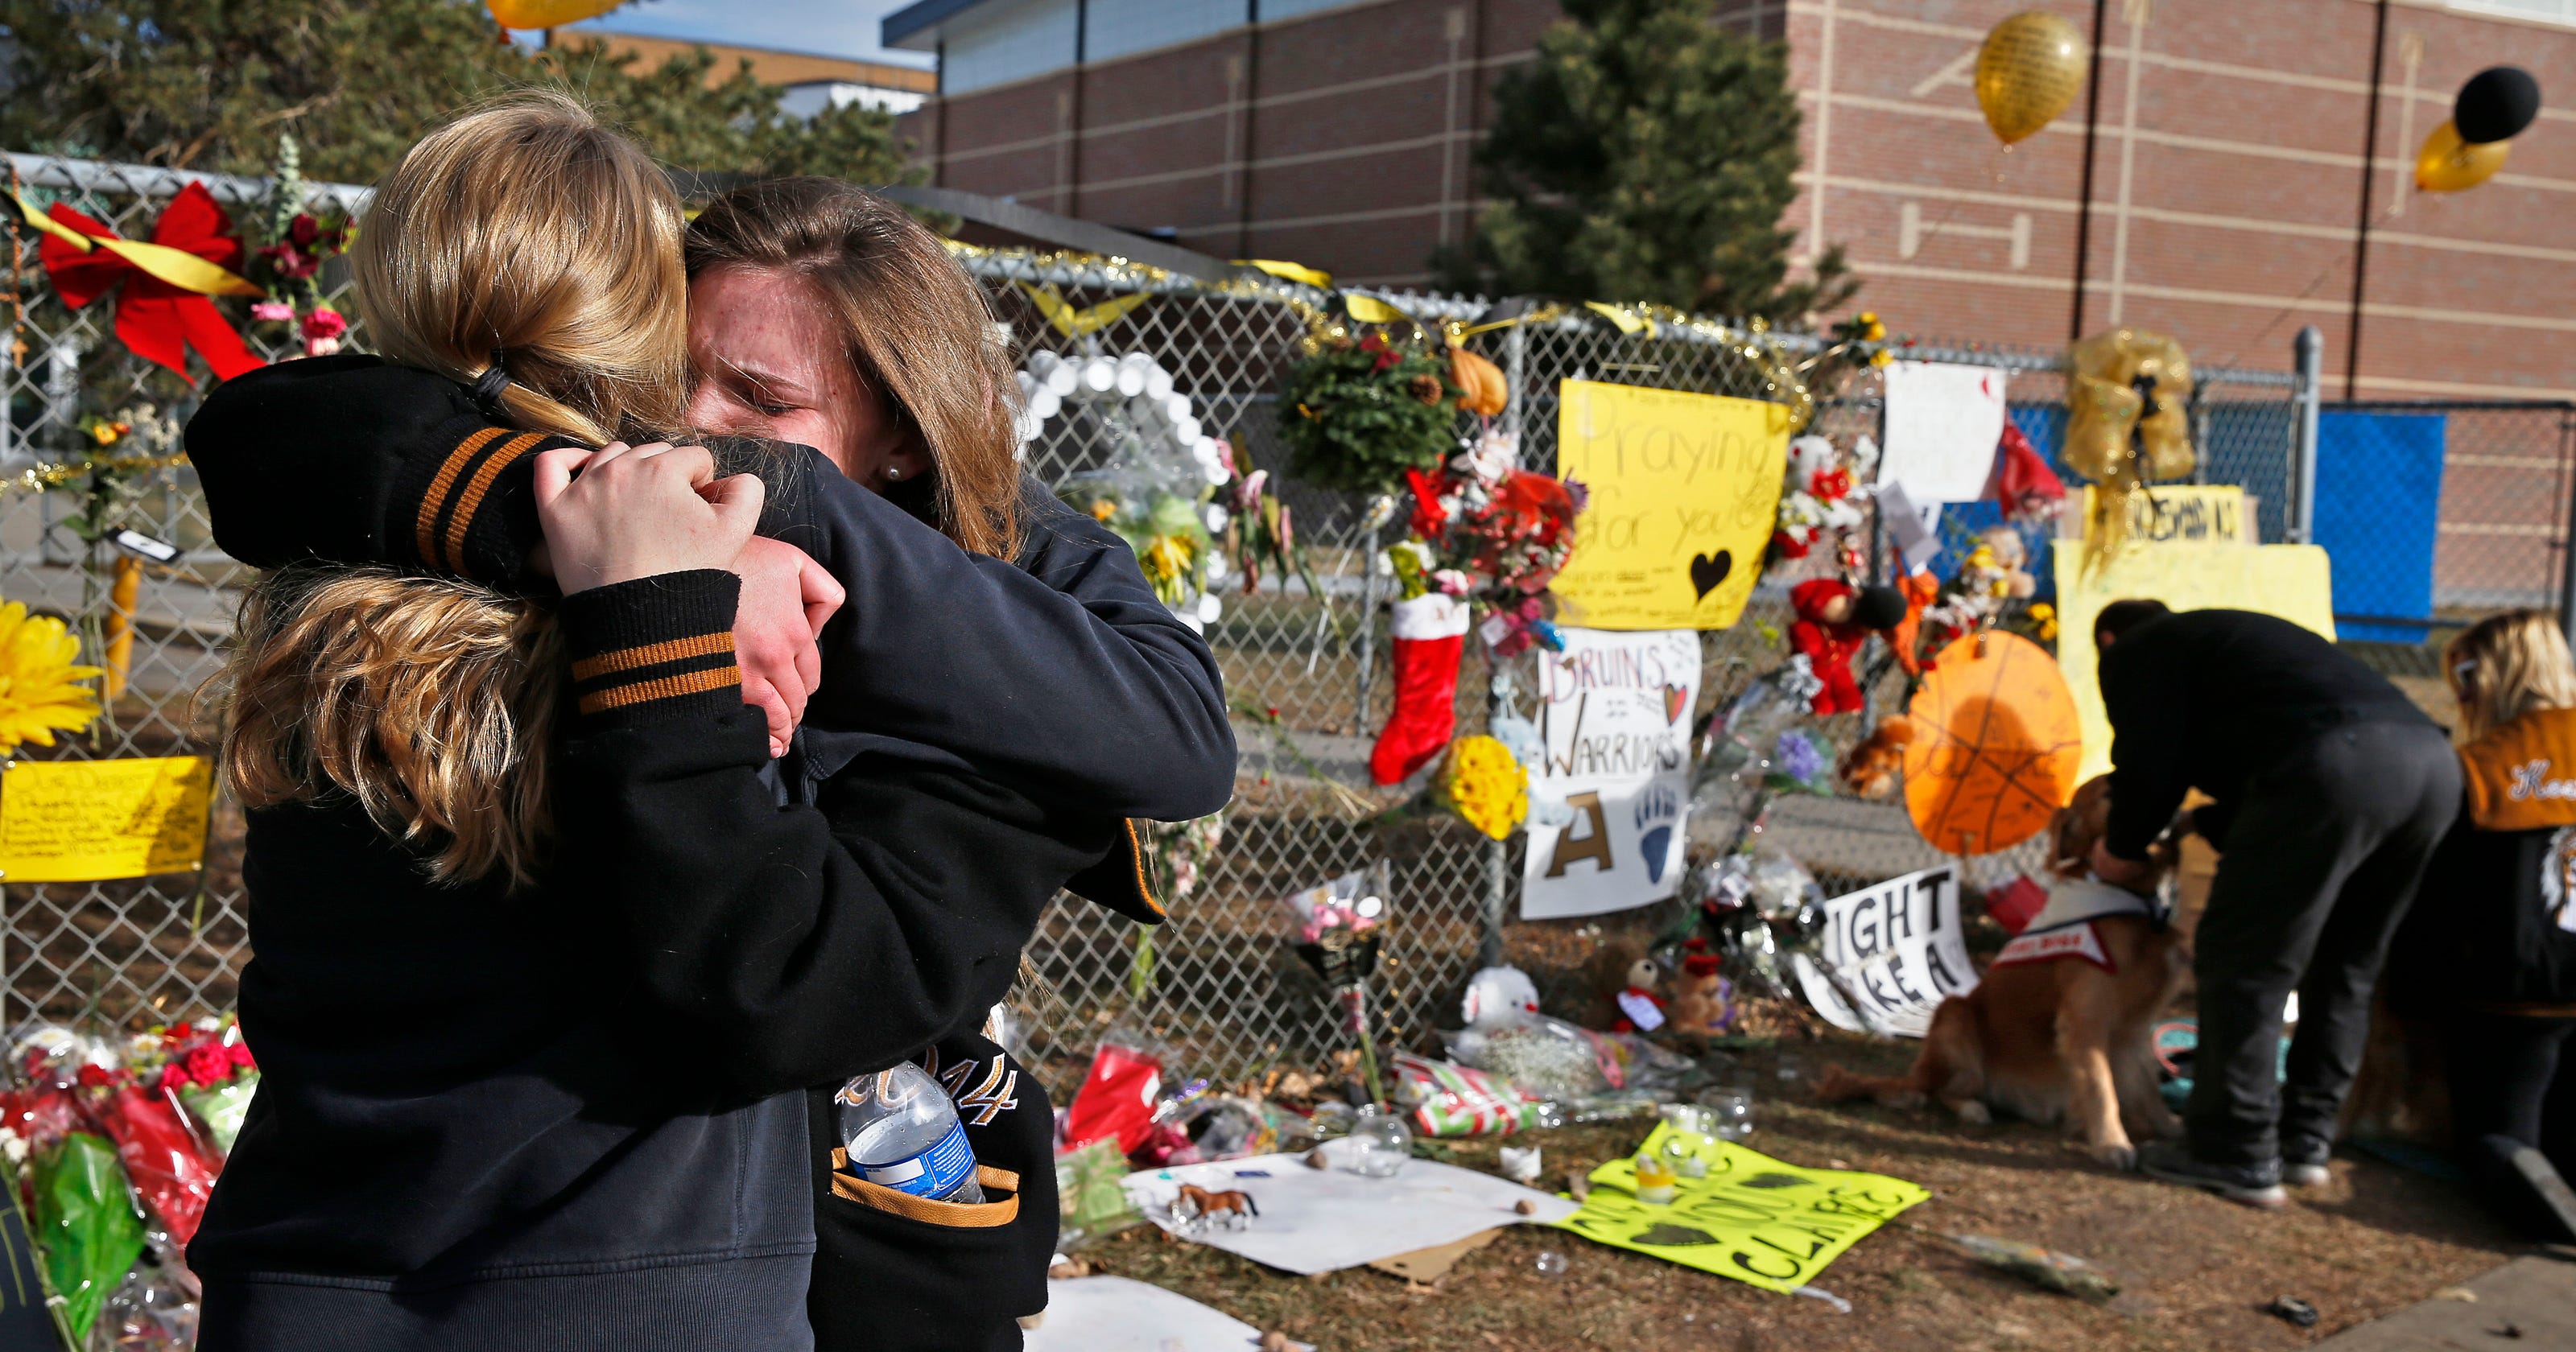 Teen accused of harassing sites of school shootings